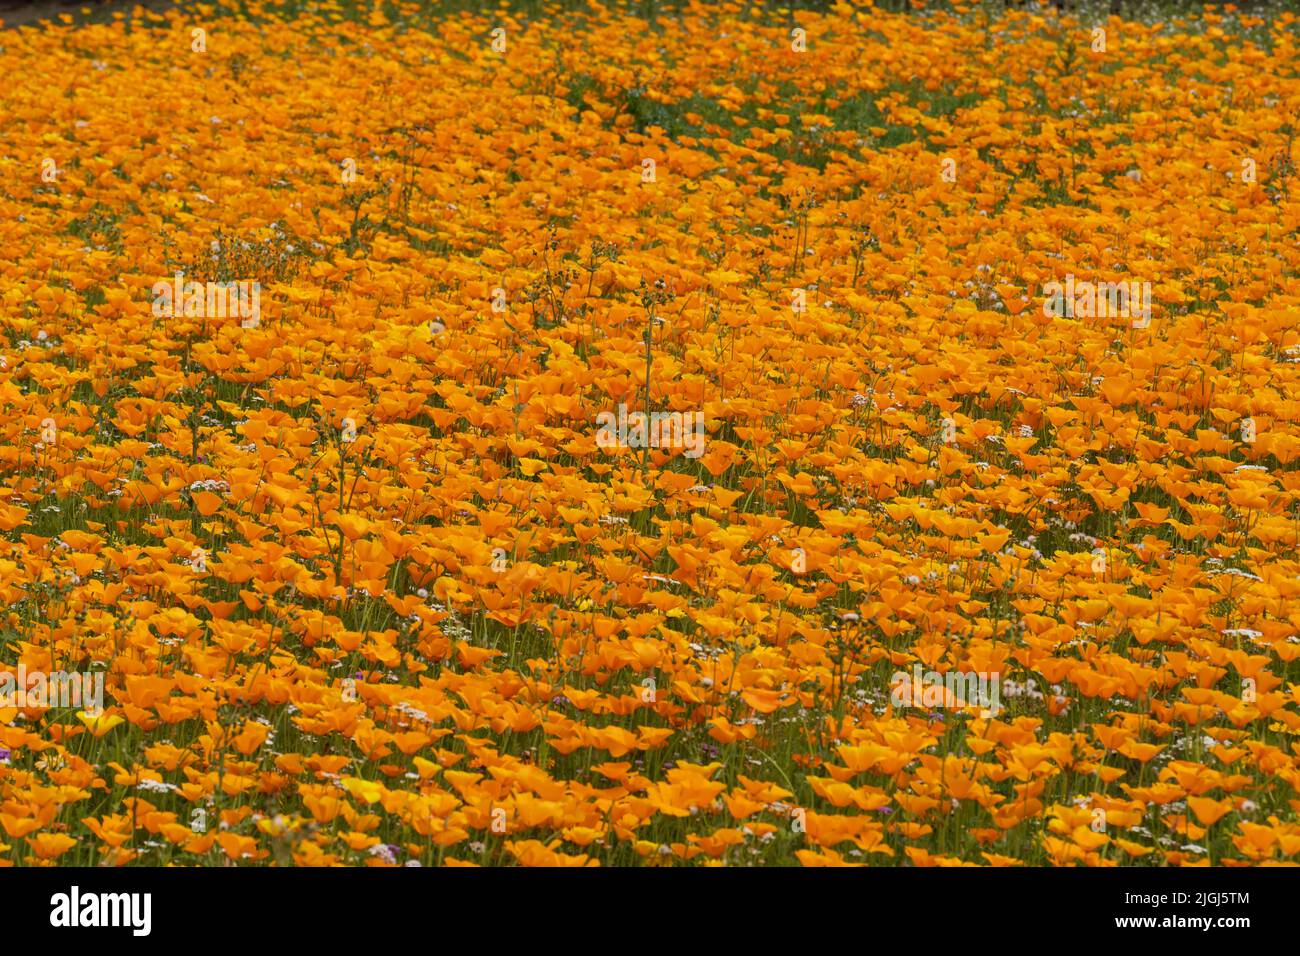 Prueba de plantación de flores silvestres en tierras comunes no cultivadas en Kelso, Escocia, organizada por el Consejo de Fronteras Escocés. Amapolas de California. Foto de stock